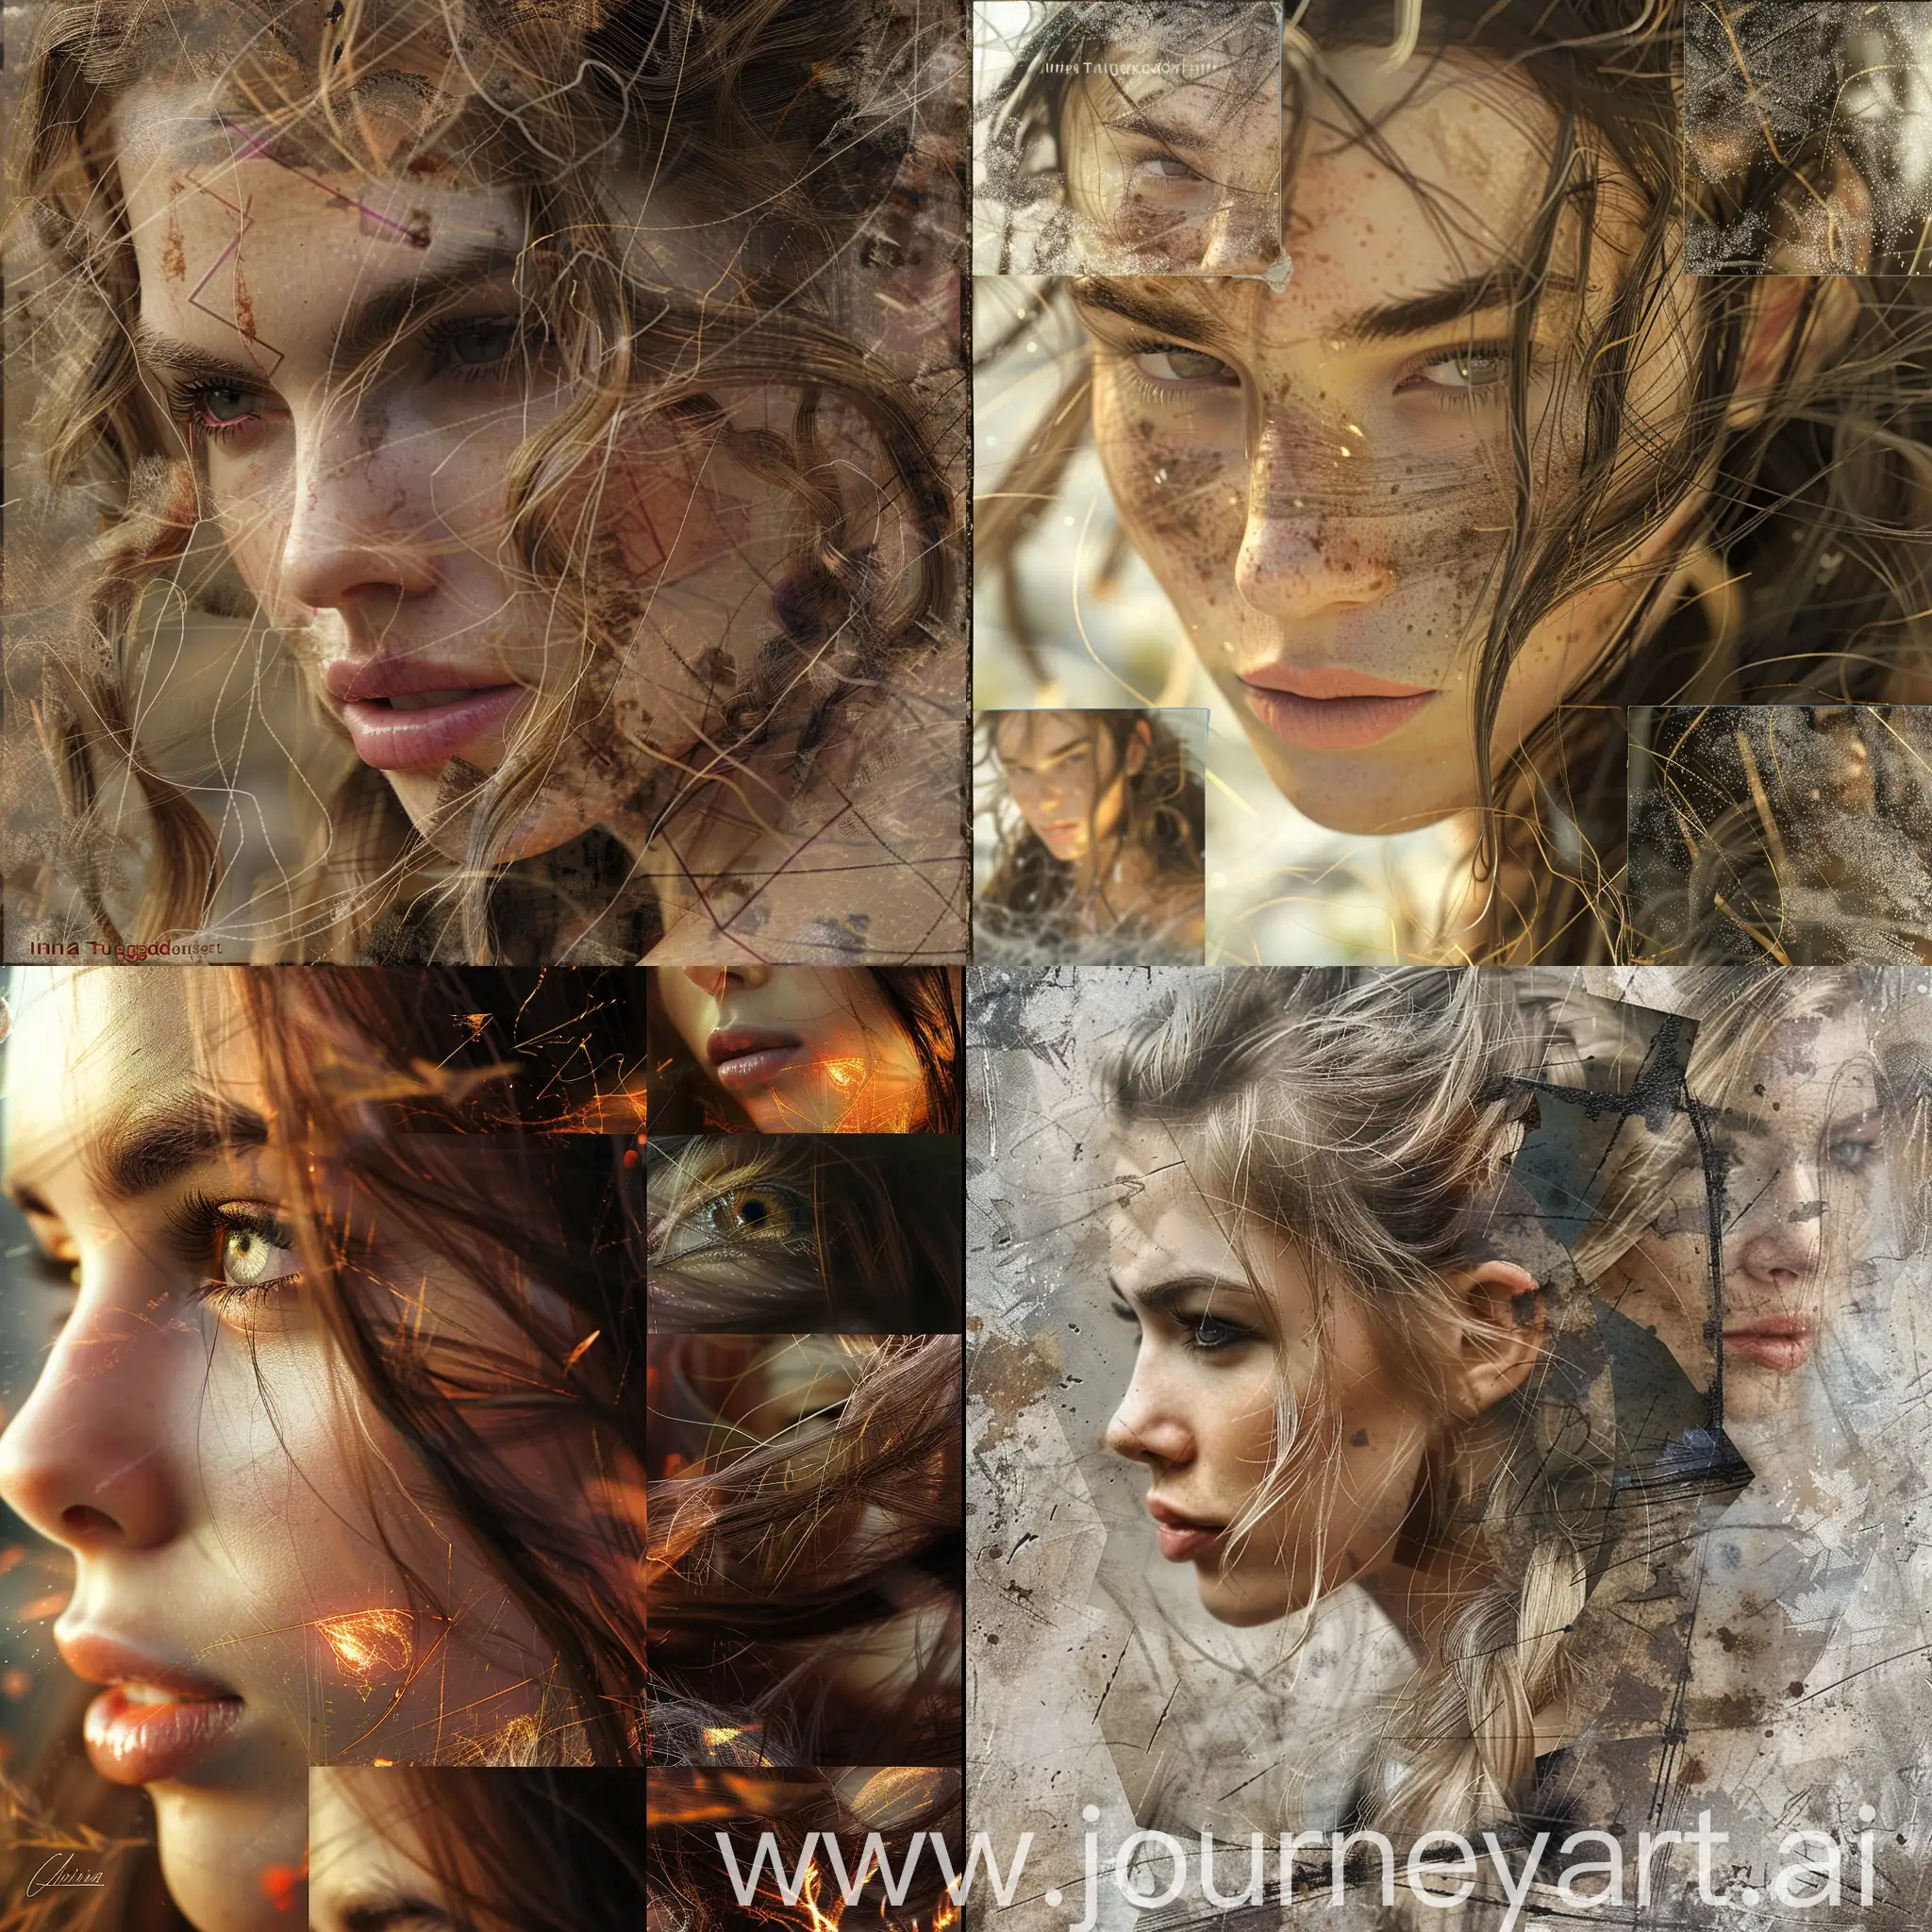 коллаж из фотографий женского лица и волос, концепт-арт Нины Трюггвадоттир, в тренде на Artstation, fantasy art, deviantart, behance hd, daz3d